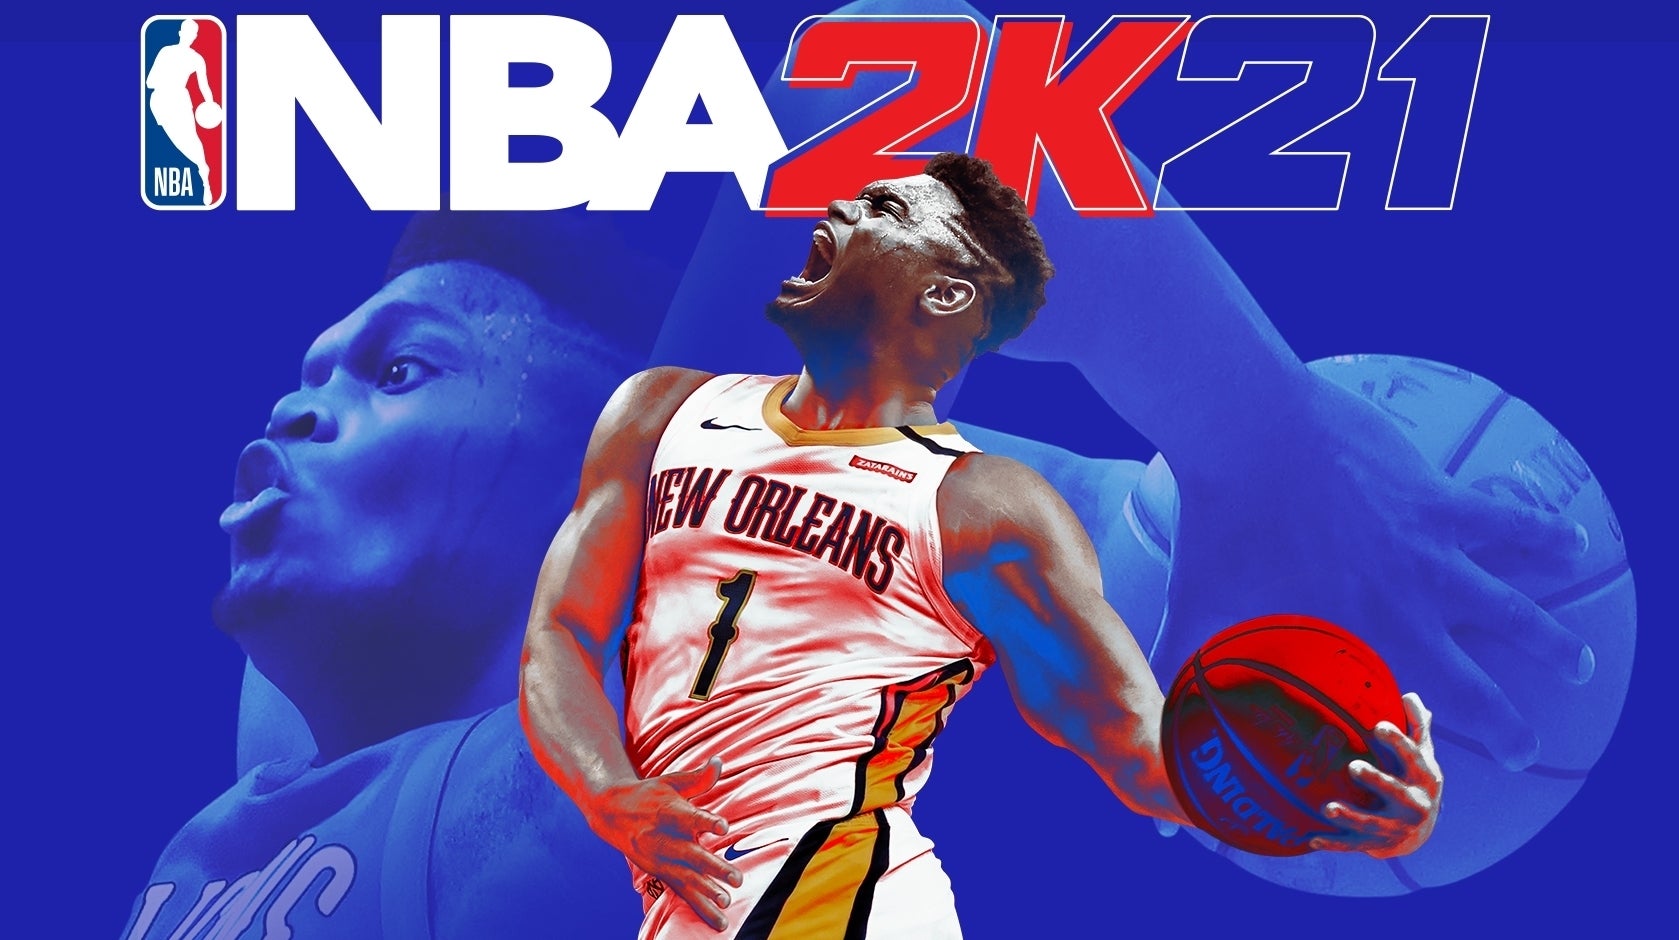 Obrazki dla Ceny gier na nowe konsole jednak nie takie wysokie? NBA 2K21 tylko o 10 zł droższe